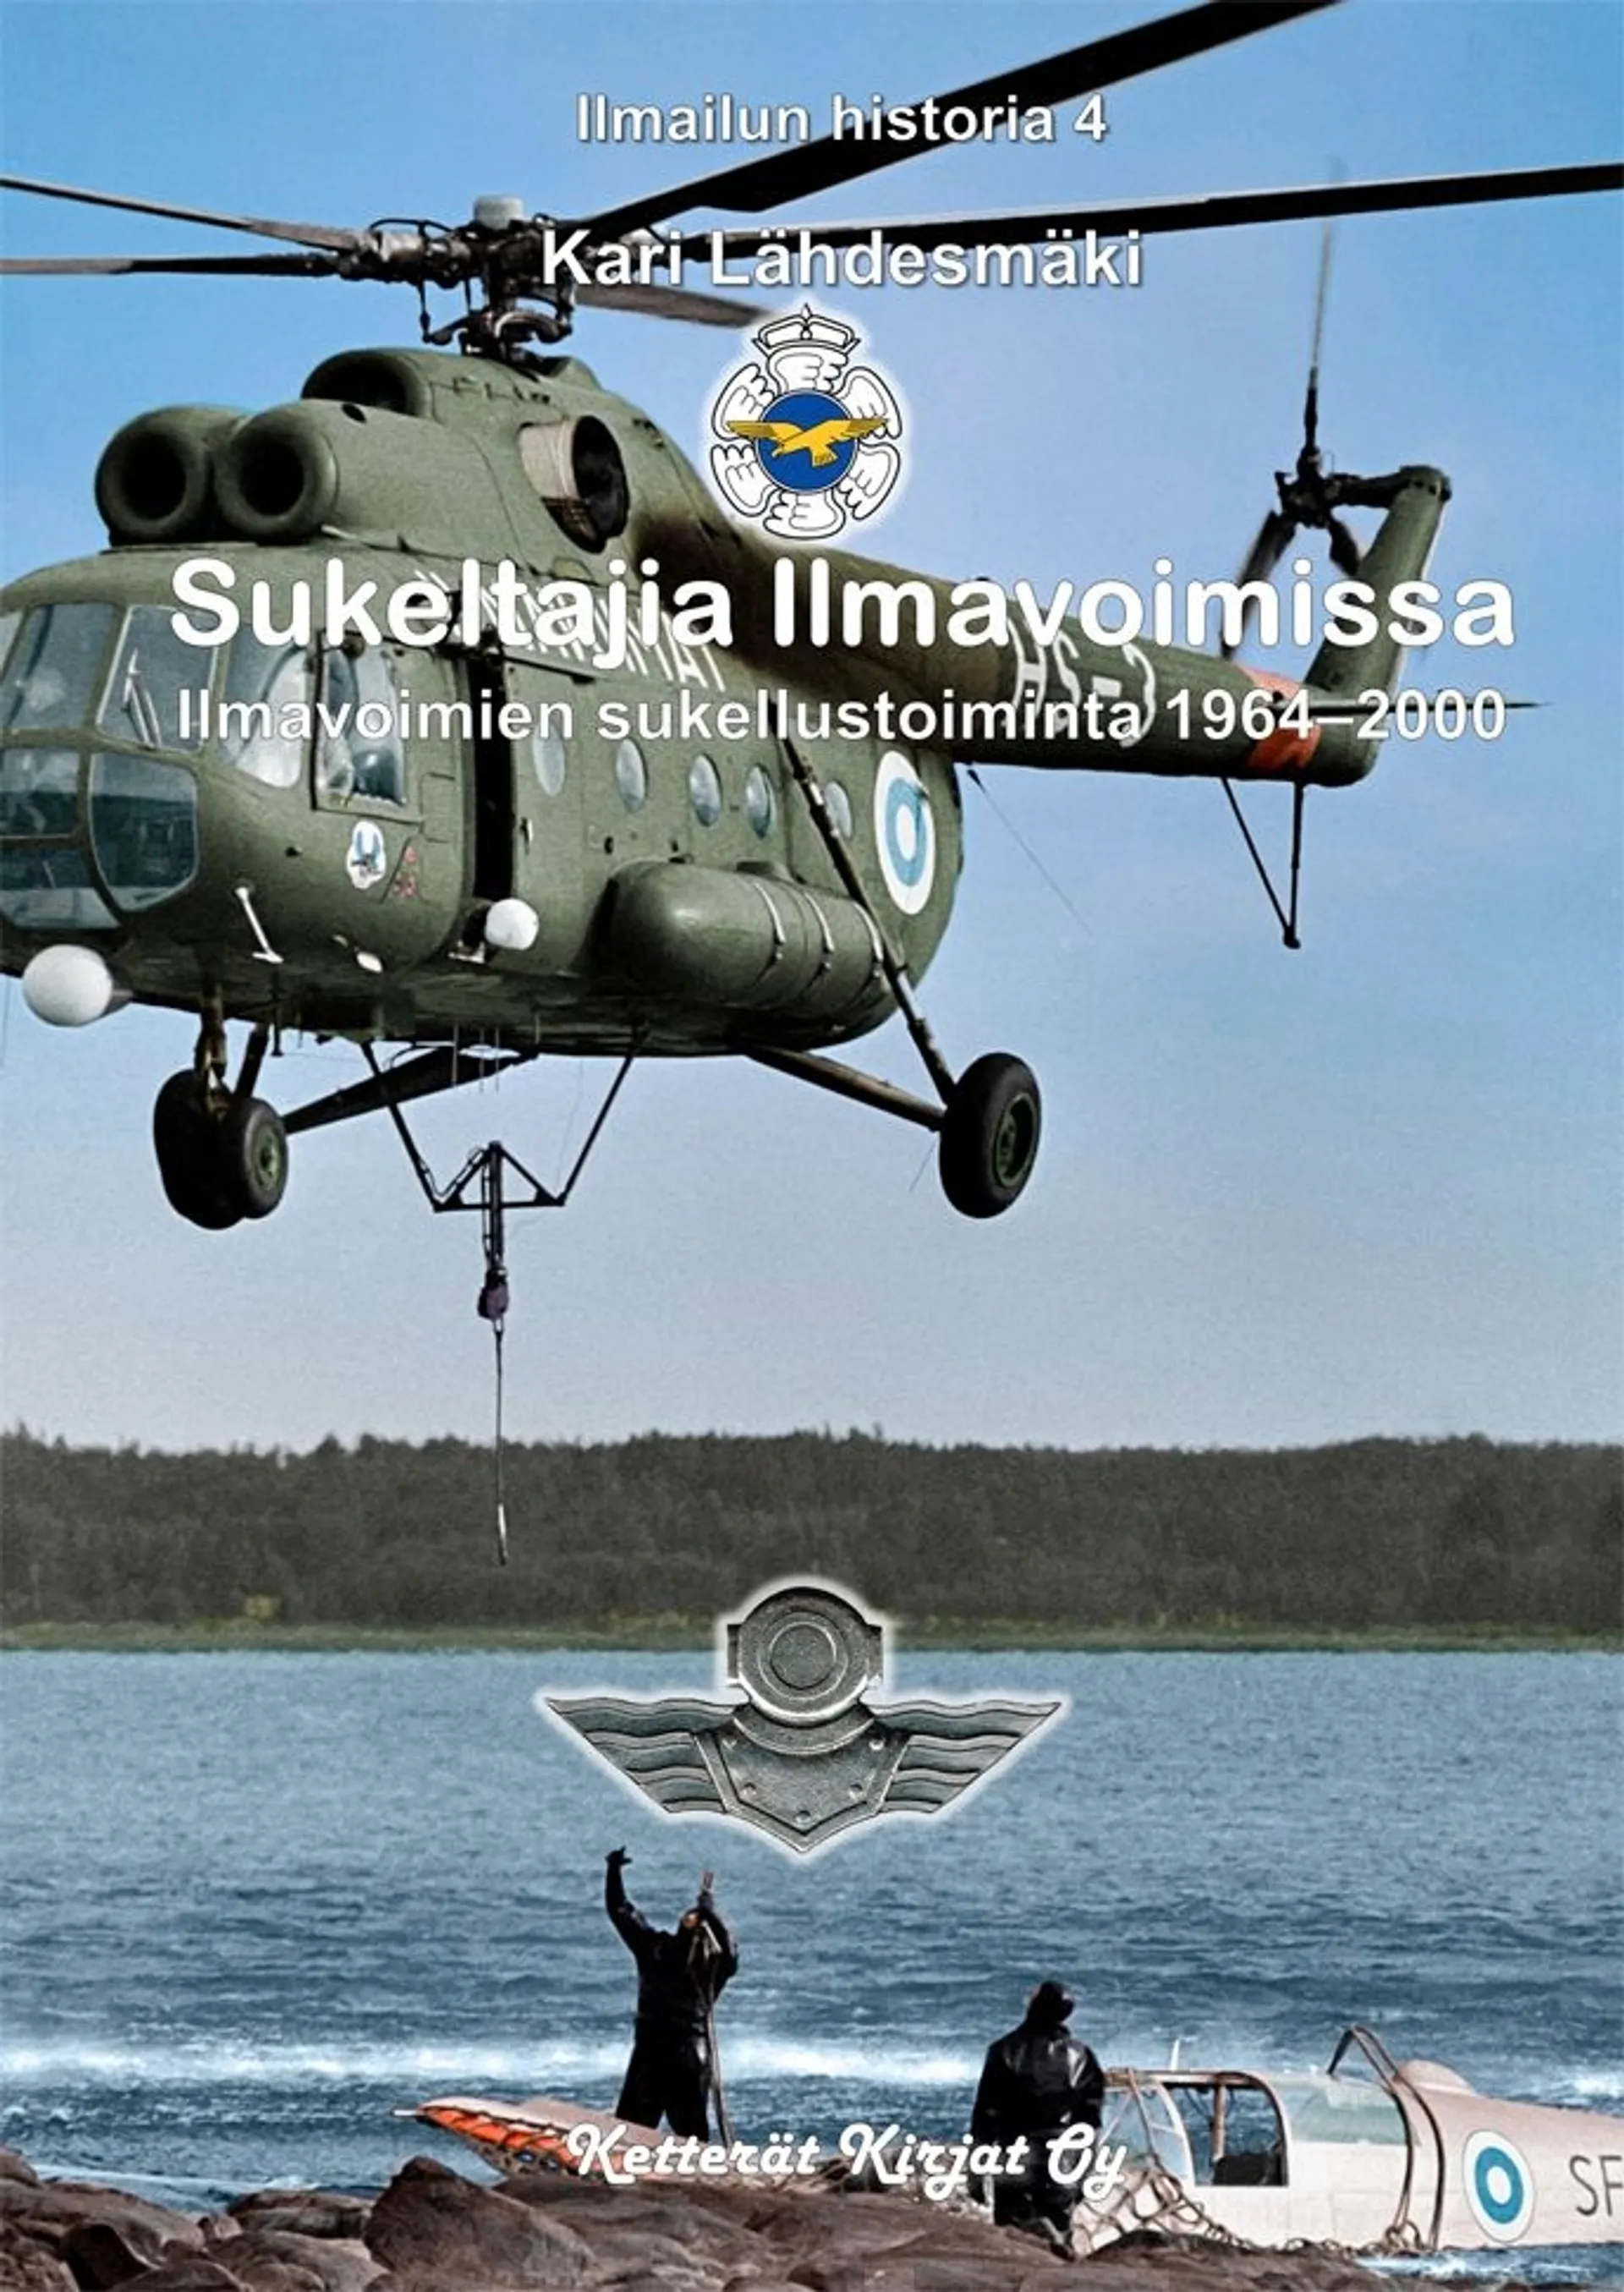 Lähdesmäki, Sukeltajia Ilmavoimissa - Ilmavoimien sukellustoiminta 1964-2000